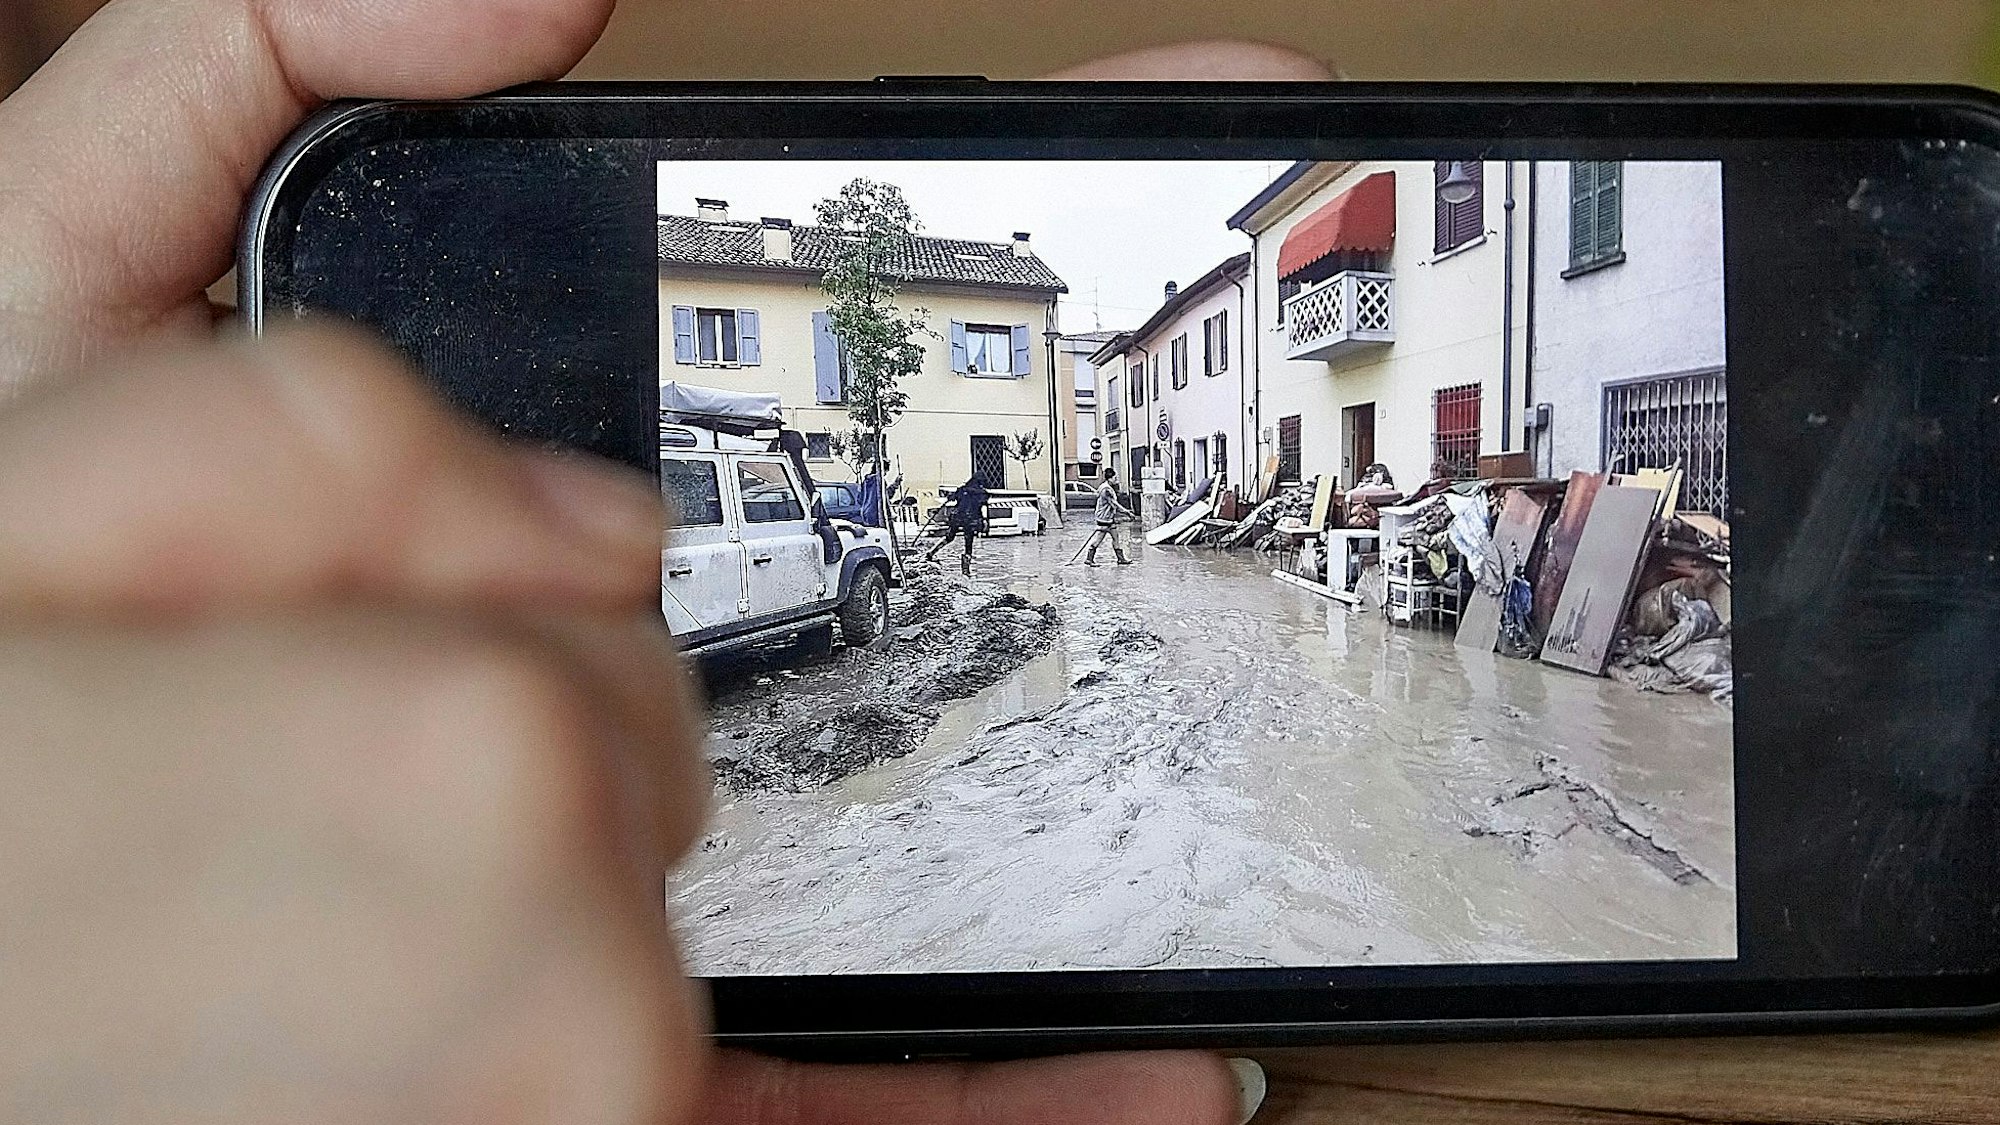 Fotos aus dem Flutgebiet auf einem Smartphone.